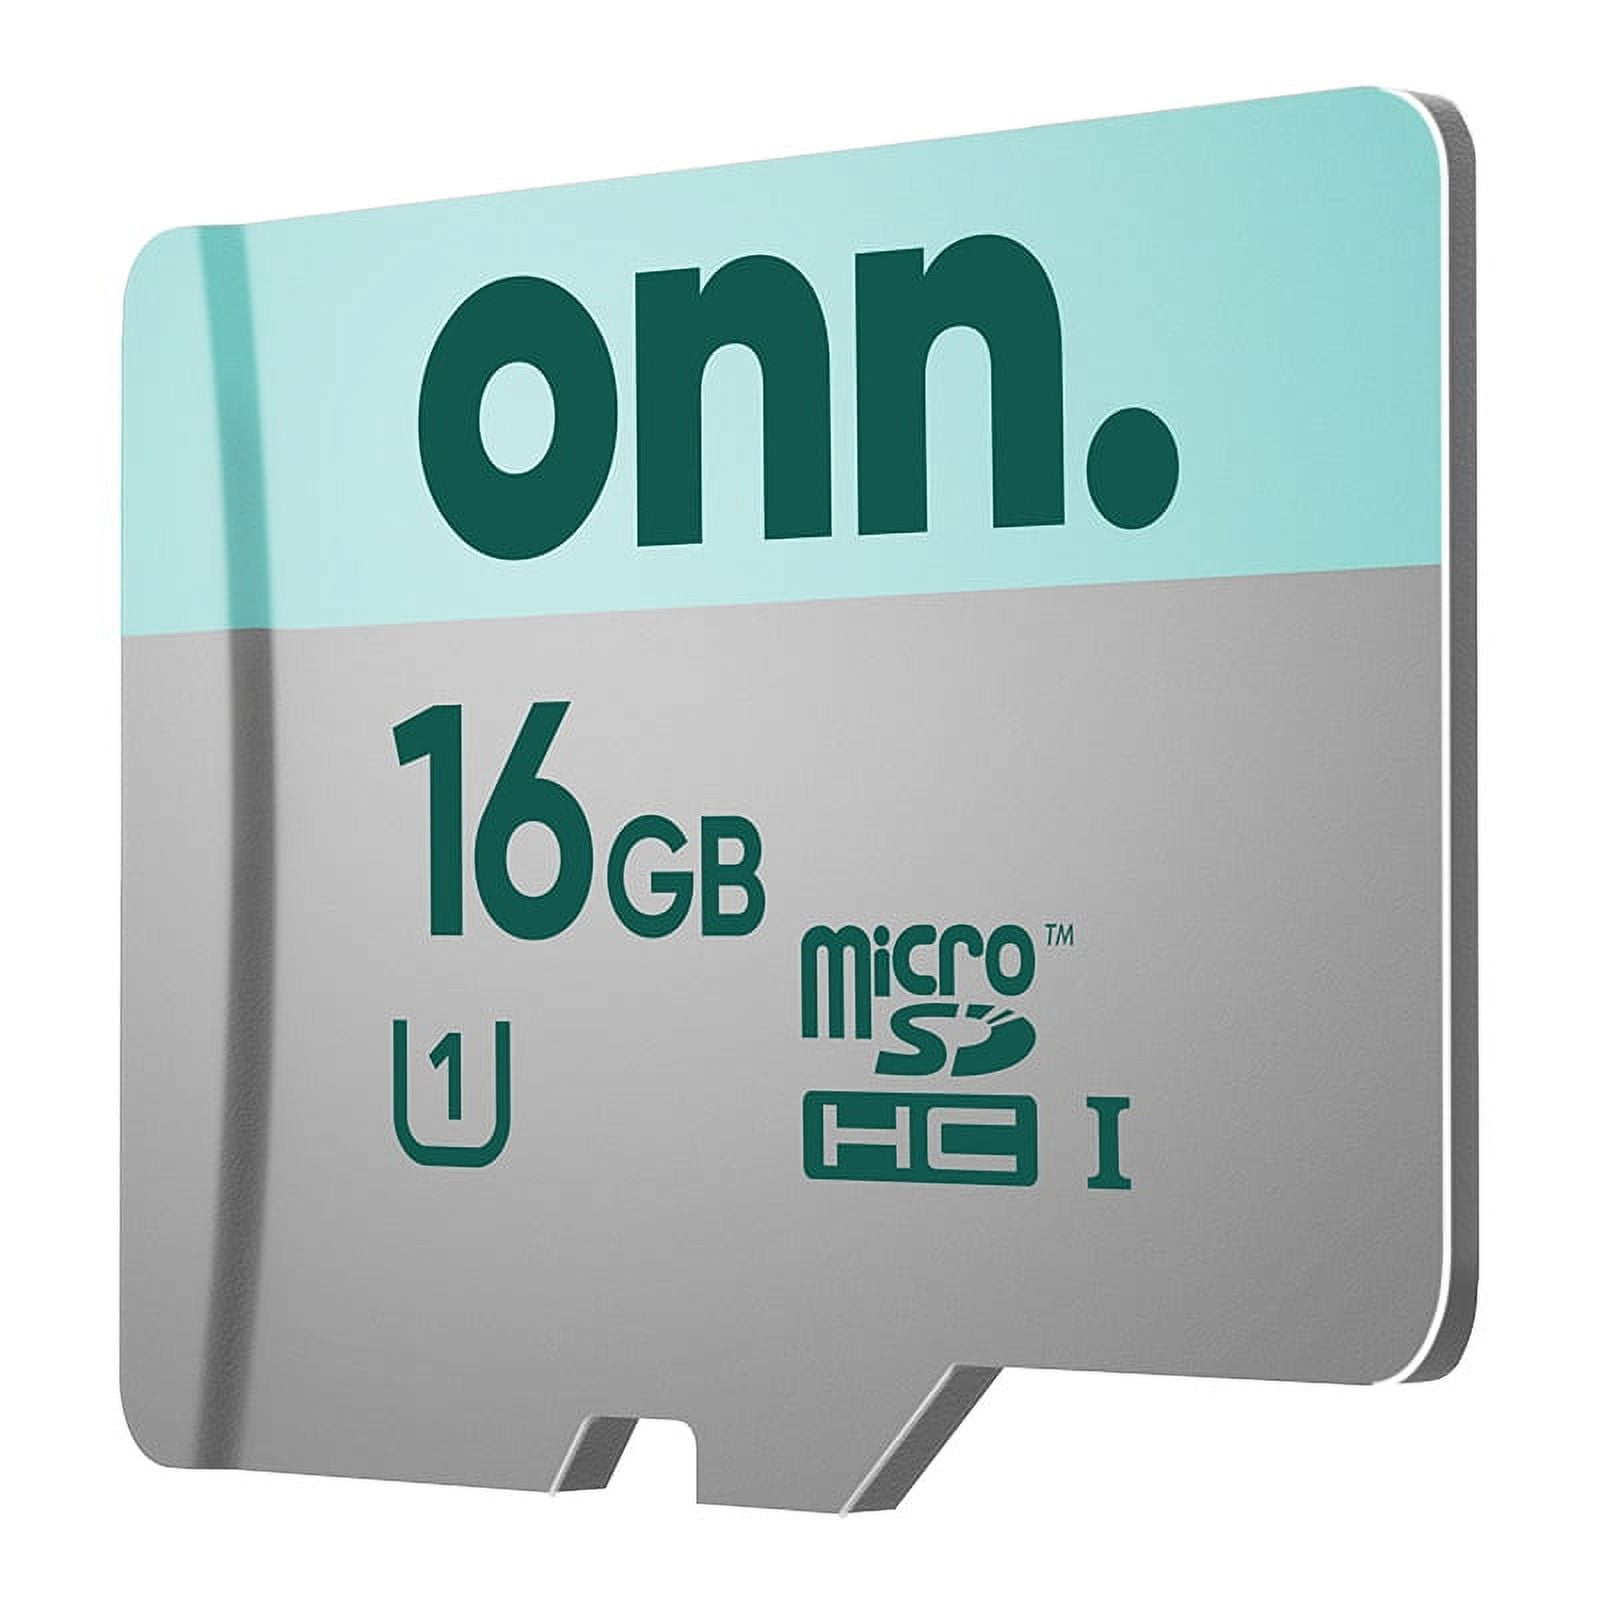 CARTE MEMOIRE MicroSD 16GB U1 C10 imation REF F080533